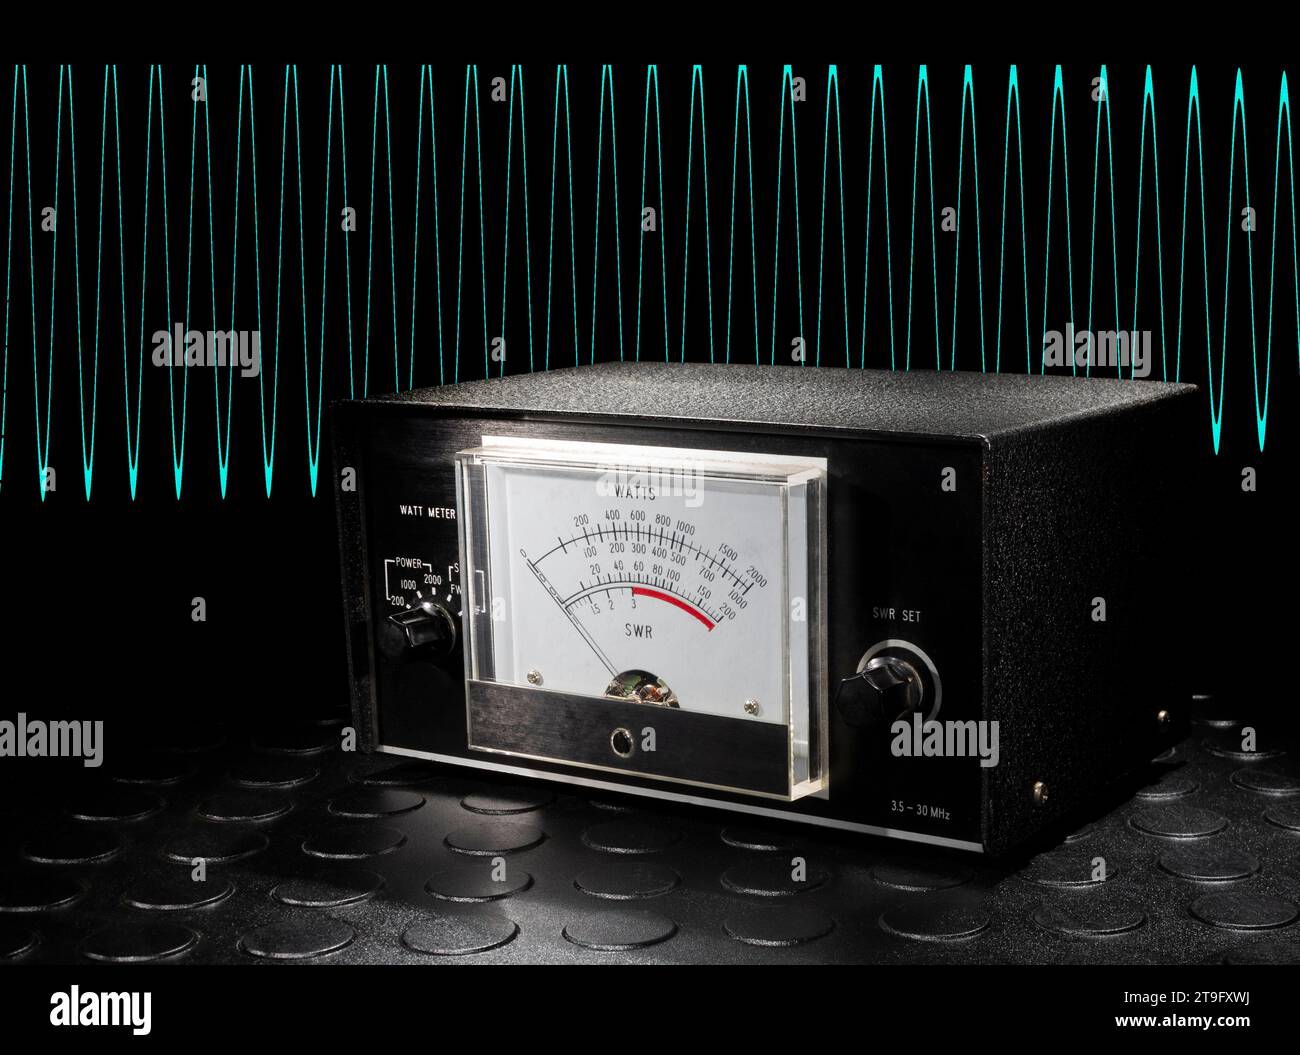 Multimètre utilisé pour mesurer la puissance en watts et le swr dans un émetteur-récepteur avec une onde sinusoïdale bleue. Banque D'Images